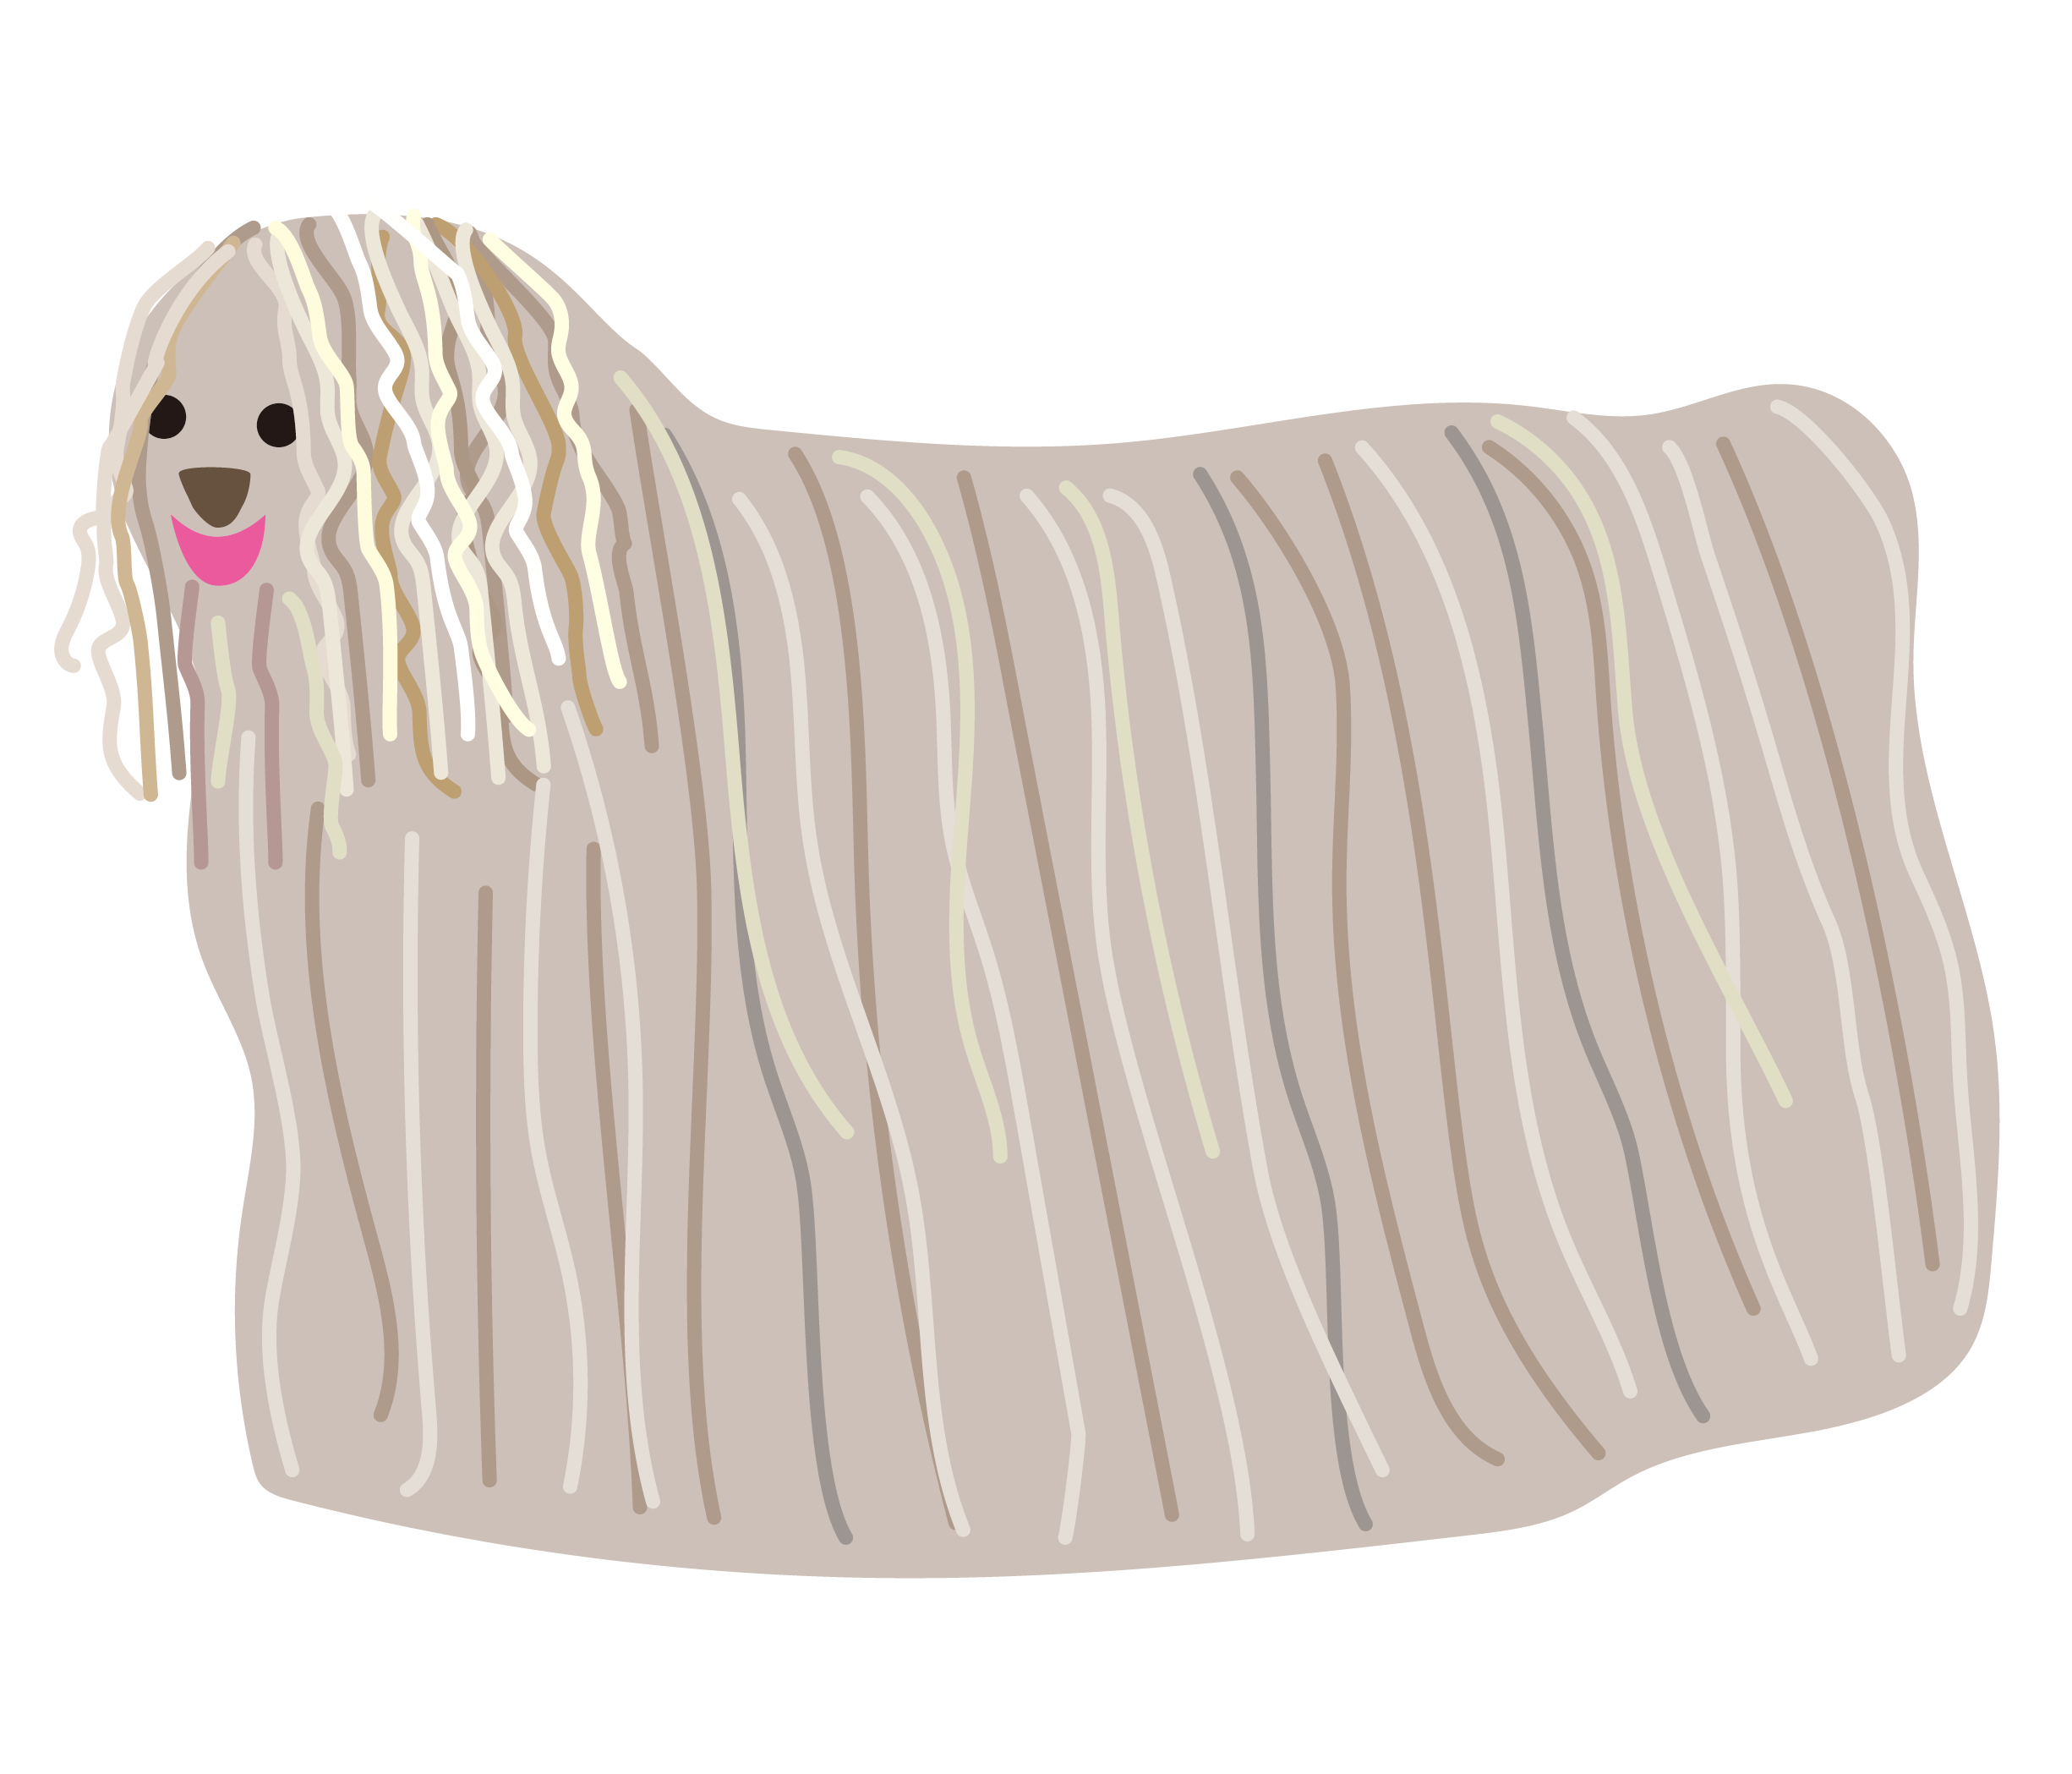 コモンドール・ハンガリアンシープドッグ・Komondor・sheepdog ・Hungarian Sheepdog